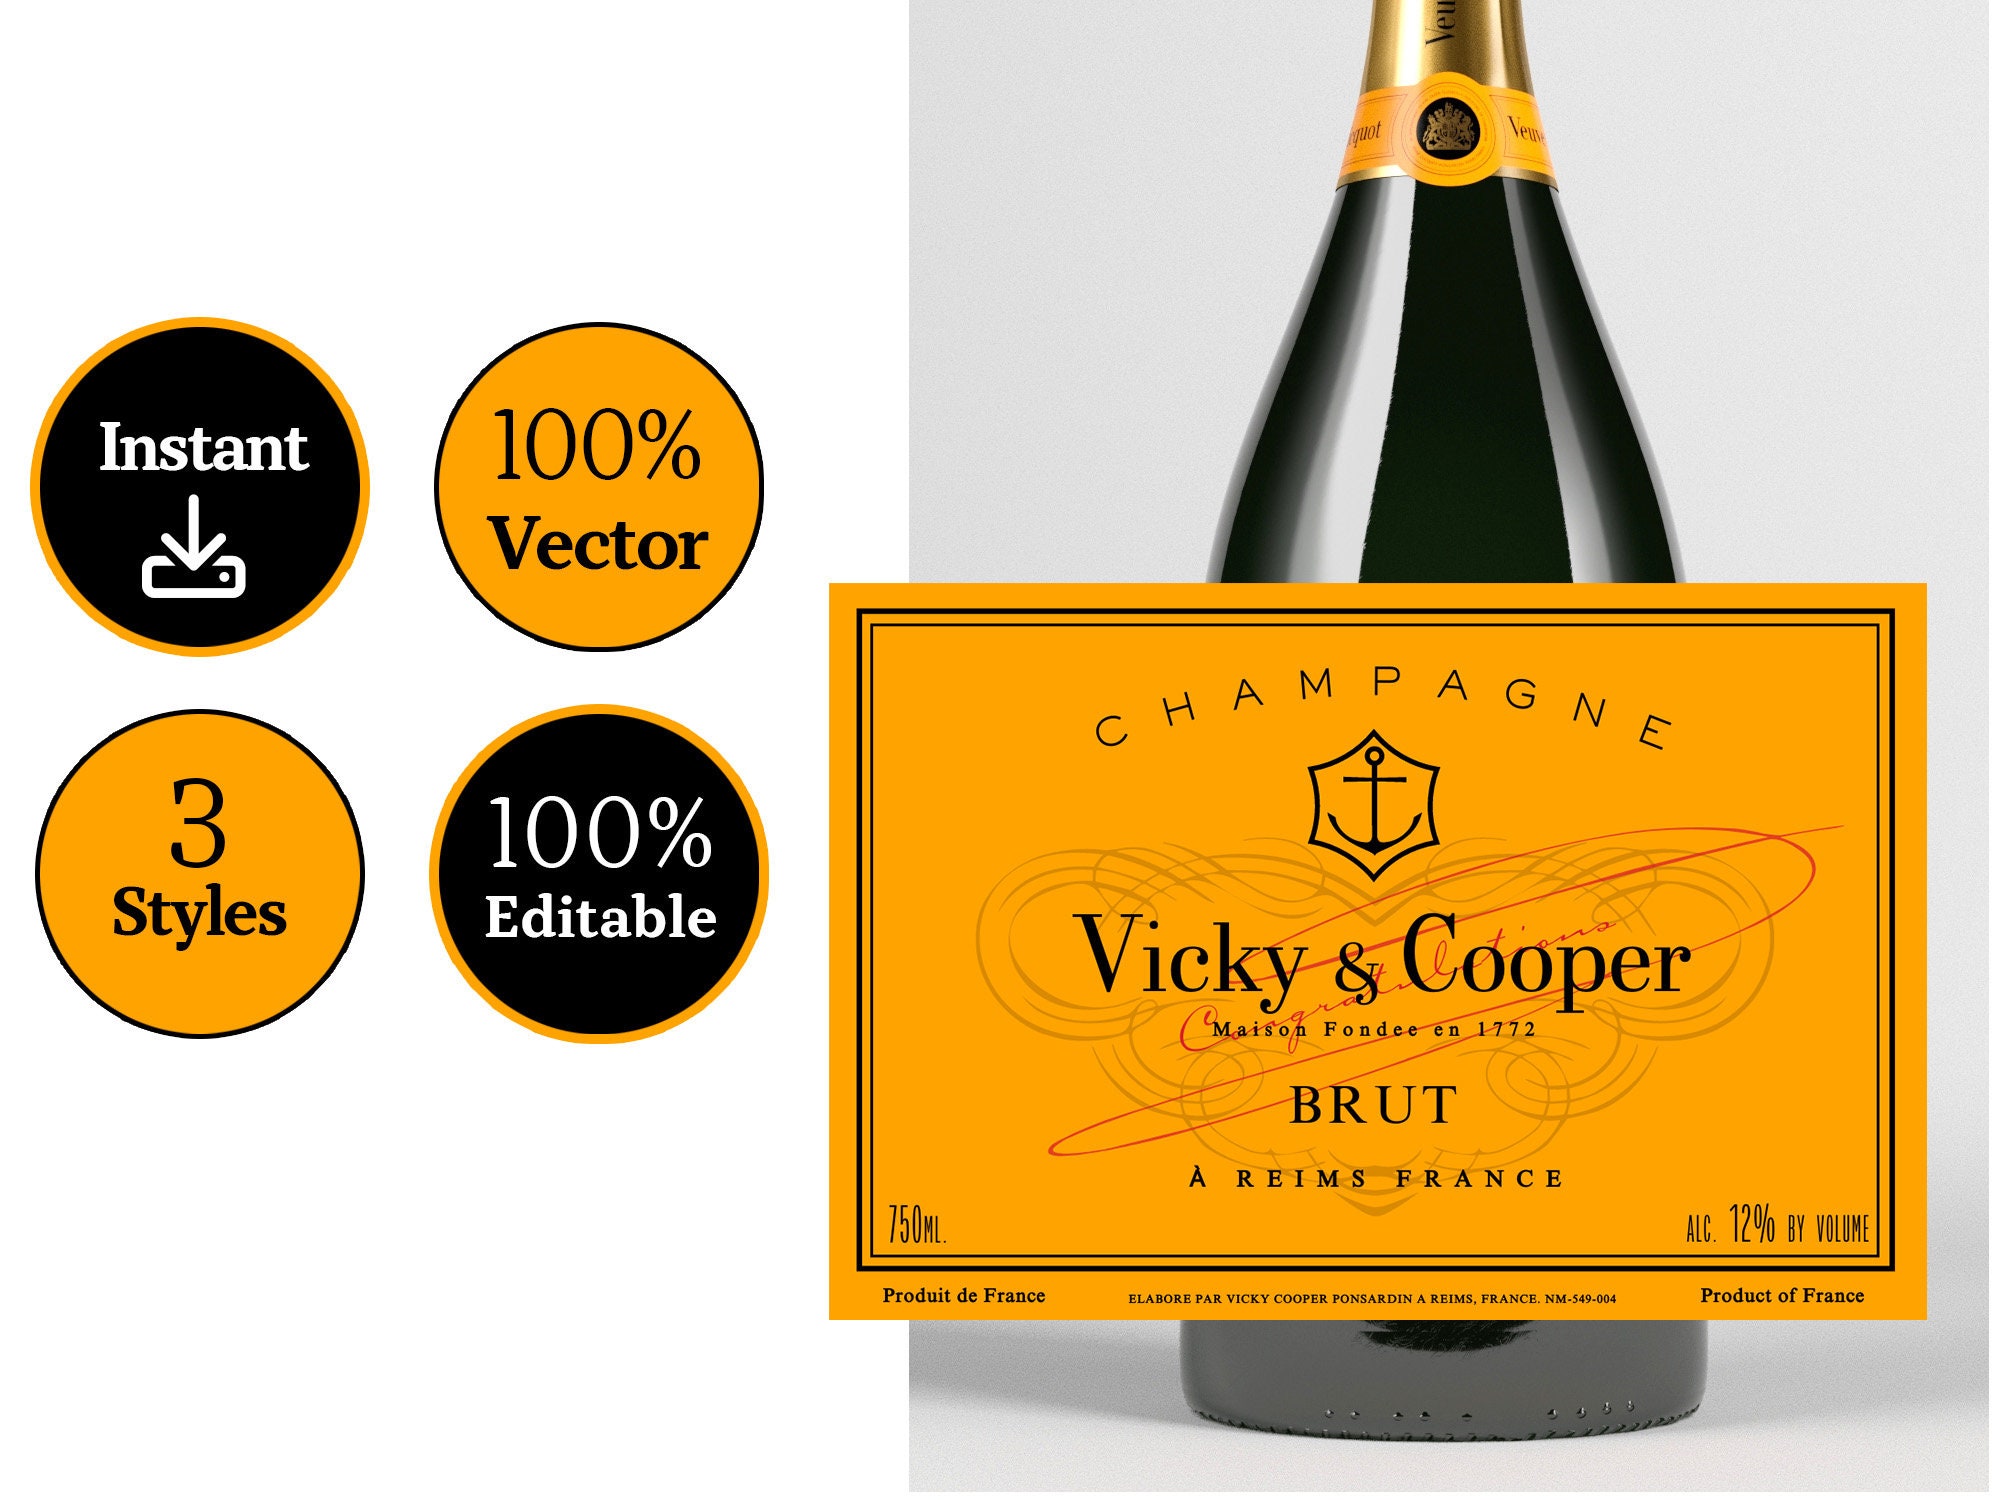 2 Personalized Veuve Clicquot Label Images, Stock Photos & Vectors